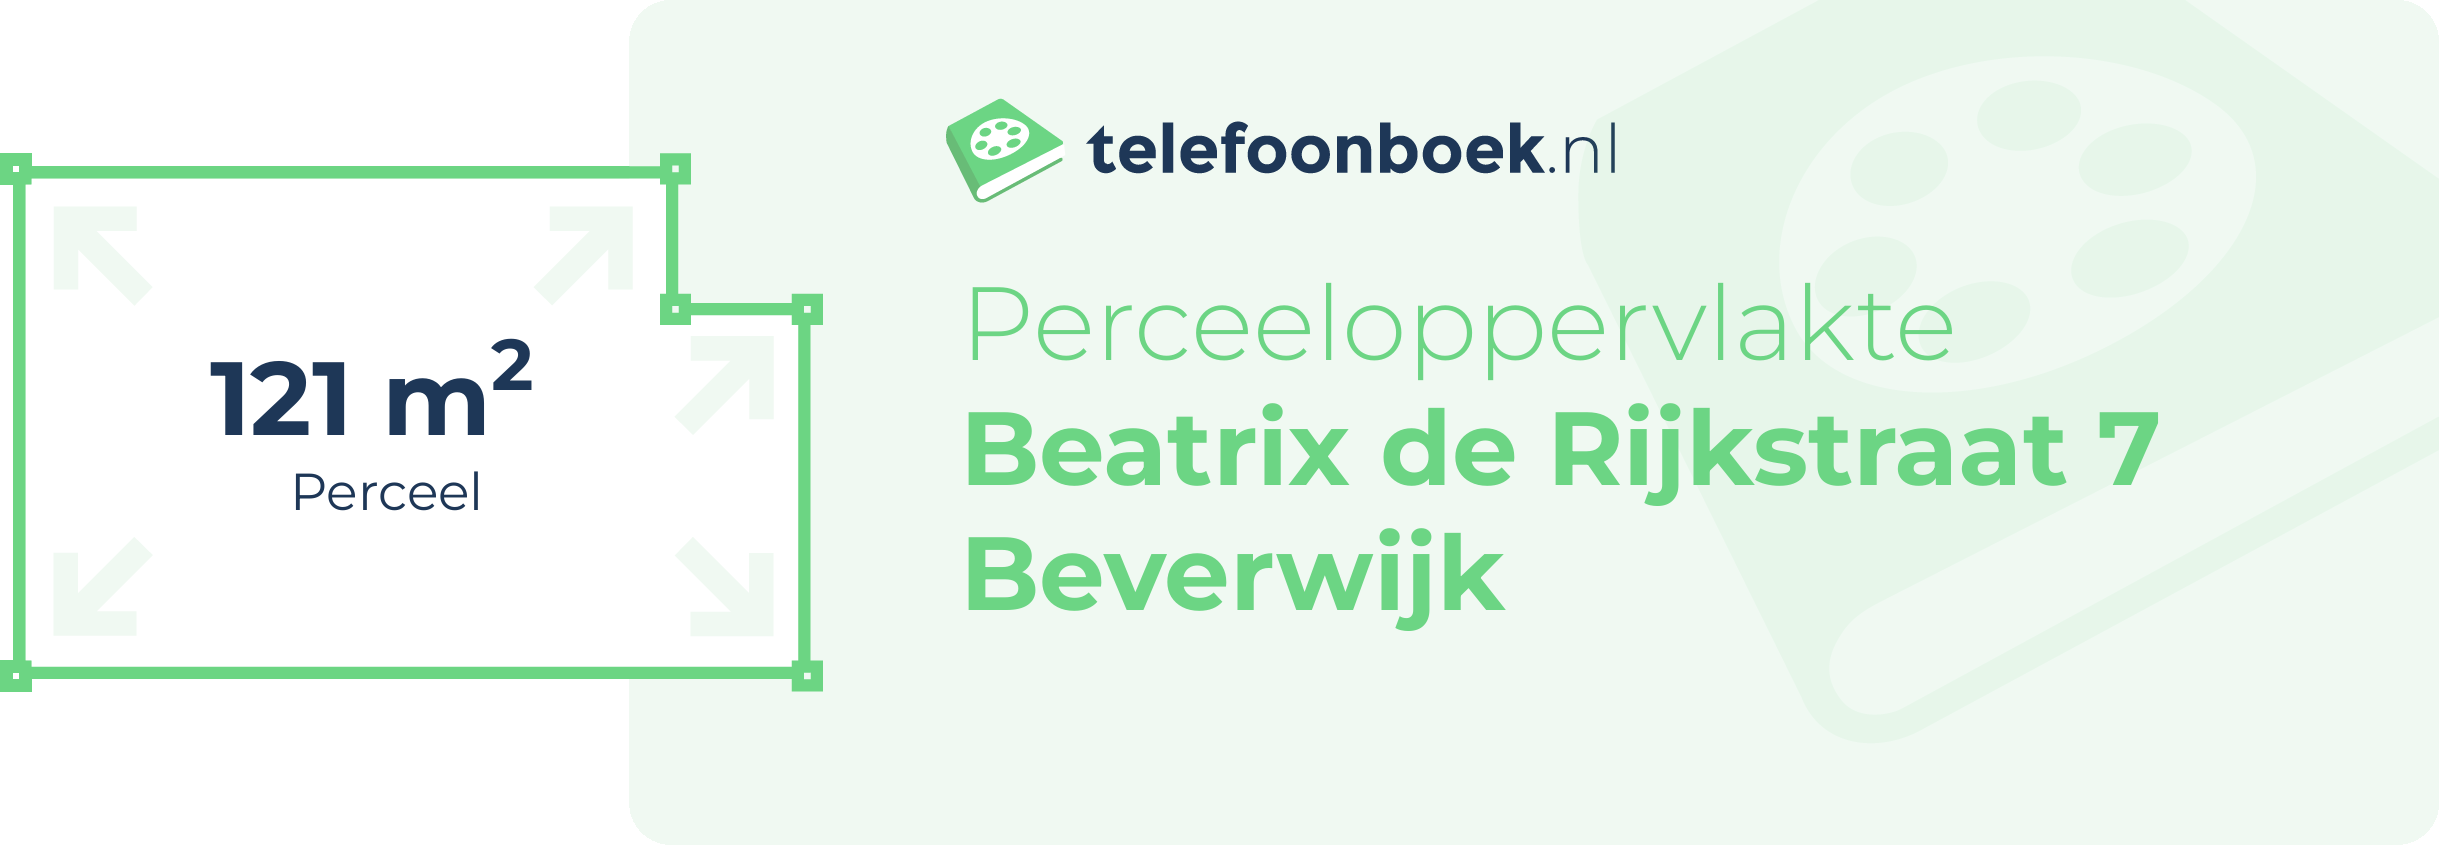 Perceeloppervlakte Beatrix De Rijkstraat 7 Beverwijk